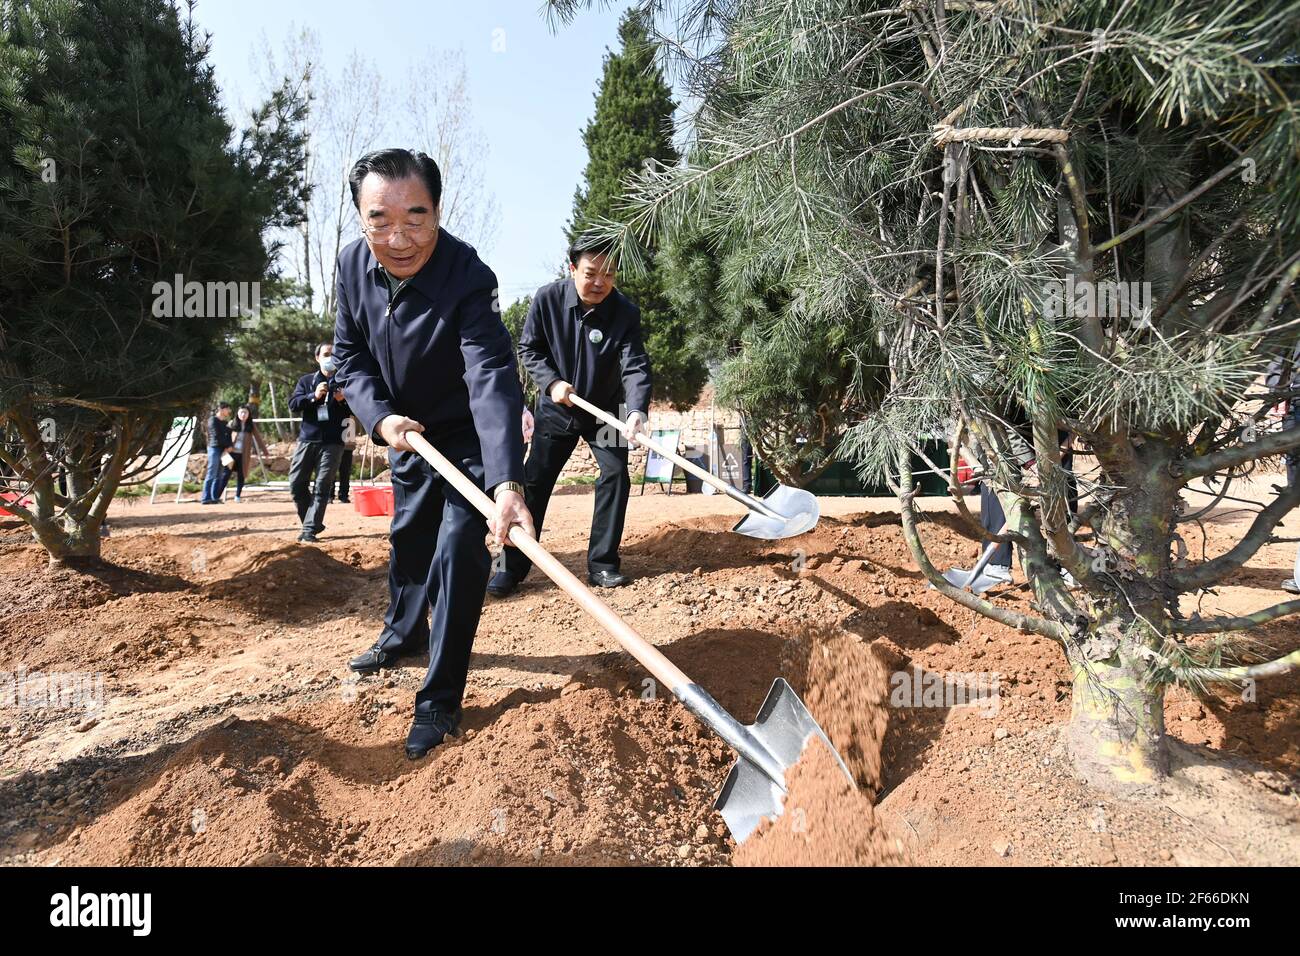 PEKING, 30. März 2021 (Xinhua) -- Zhang Qingli, stellvertretender Vorsitzender des Nationalkomitees der Politischen Konsultativkonferenz des chinesischen Volkes (CPPCC), pflanzt während einer freiwilligen Baumbepflanzung im Xishan National Forest Park im Bezirk Haidian in Peking, der Hauptstadt Chinas, am 30. März 2021 einen Baum. Chinesische politische Berater nahmen am Dienstag an einer freiwilligen Baumbepflanzung in Peking Teil. ew Kredit: Xinhua/Alamy Live News Stockfoto